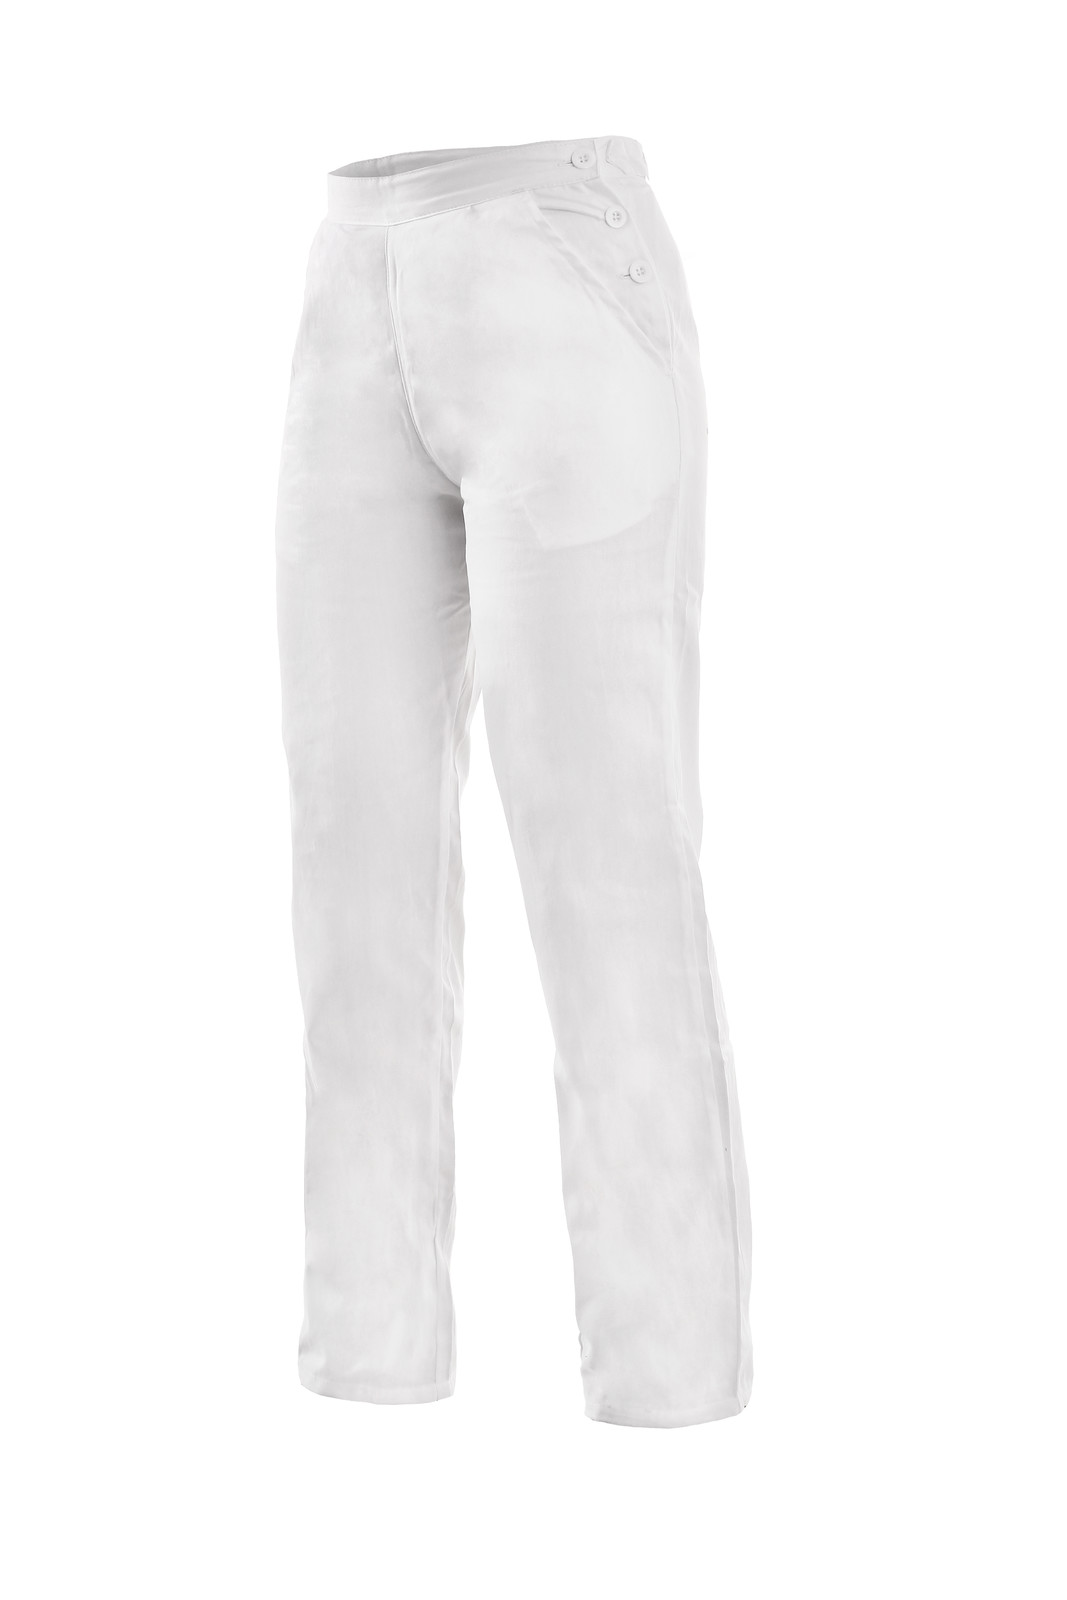 Dámske biele bavlnené nohavice Darja - veľkosť: 44, farba: biela